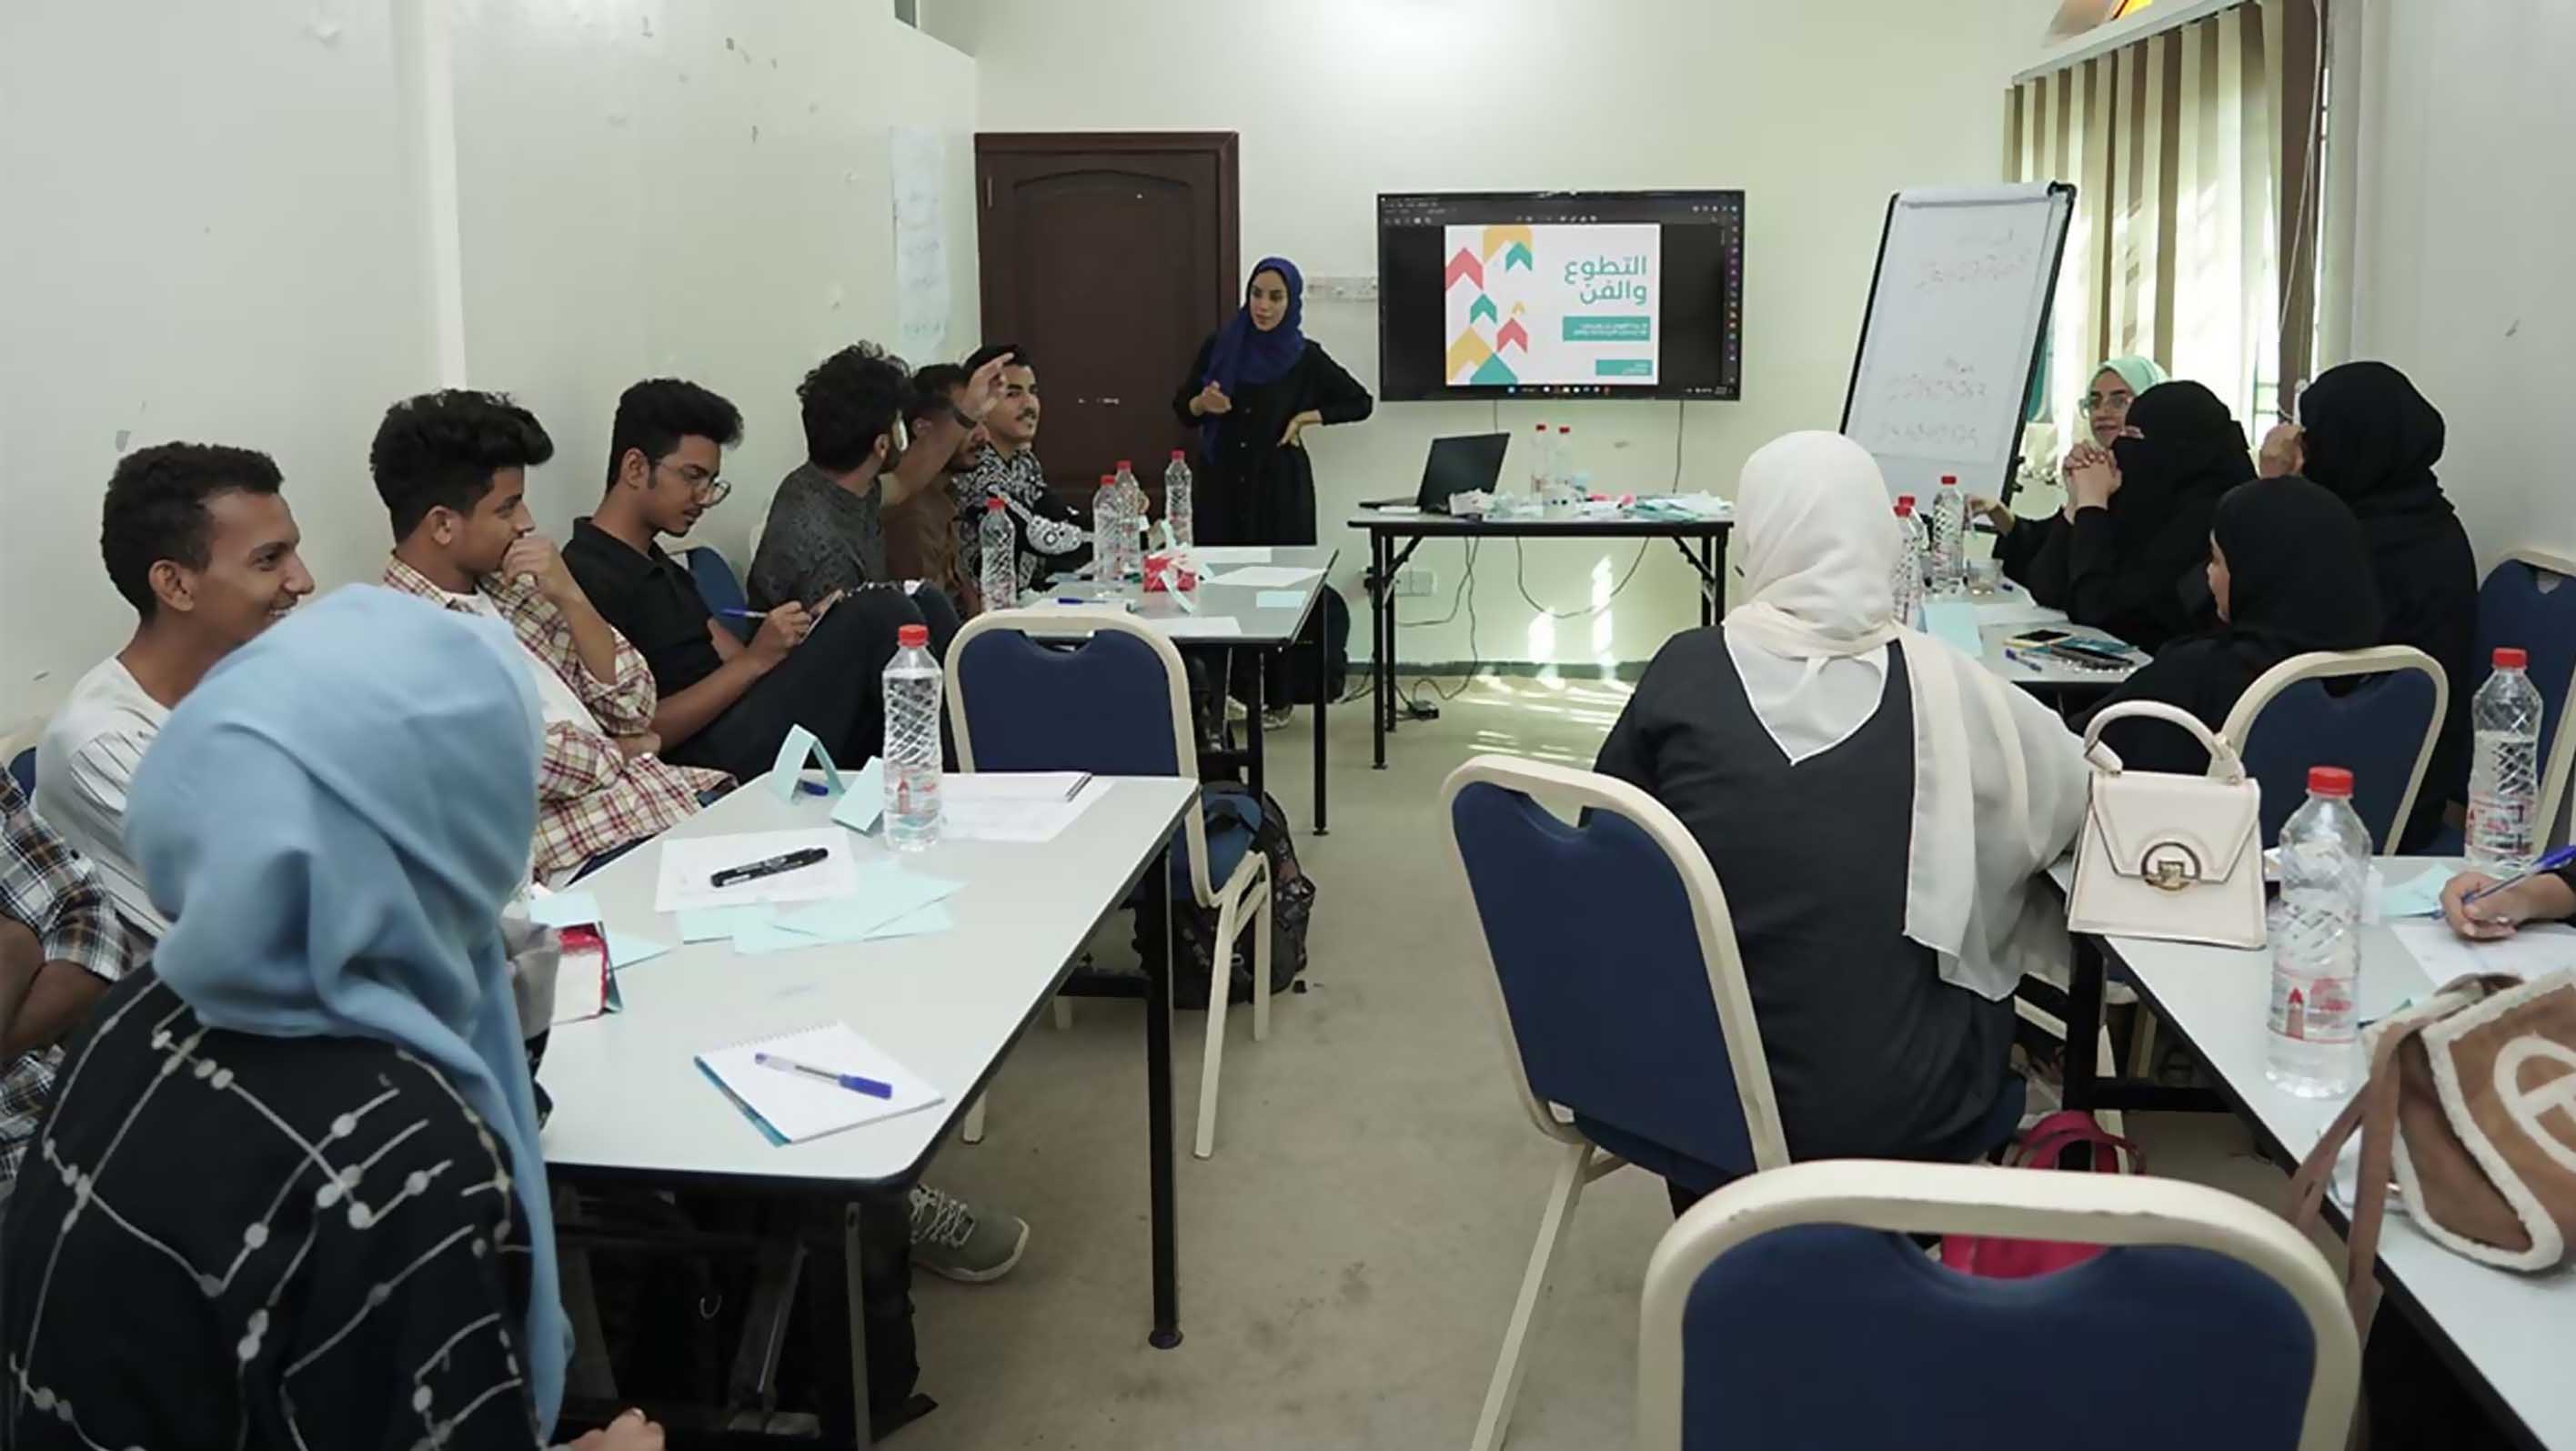 مؤسسة توكل كرمان تمول مبادرة "وتد" الشبابية في عدن